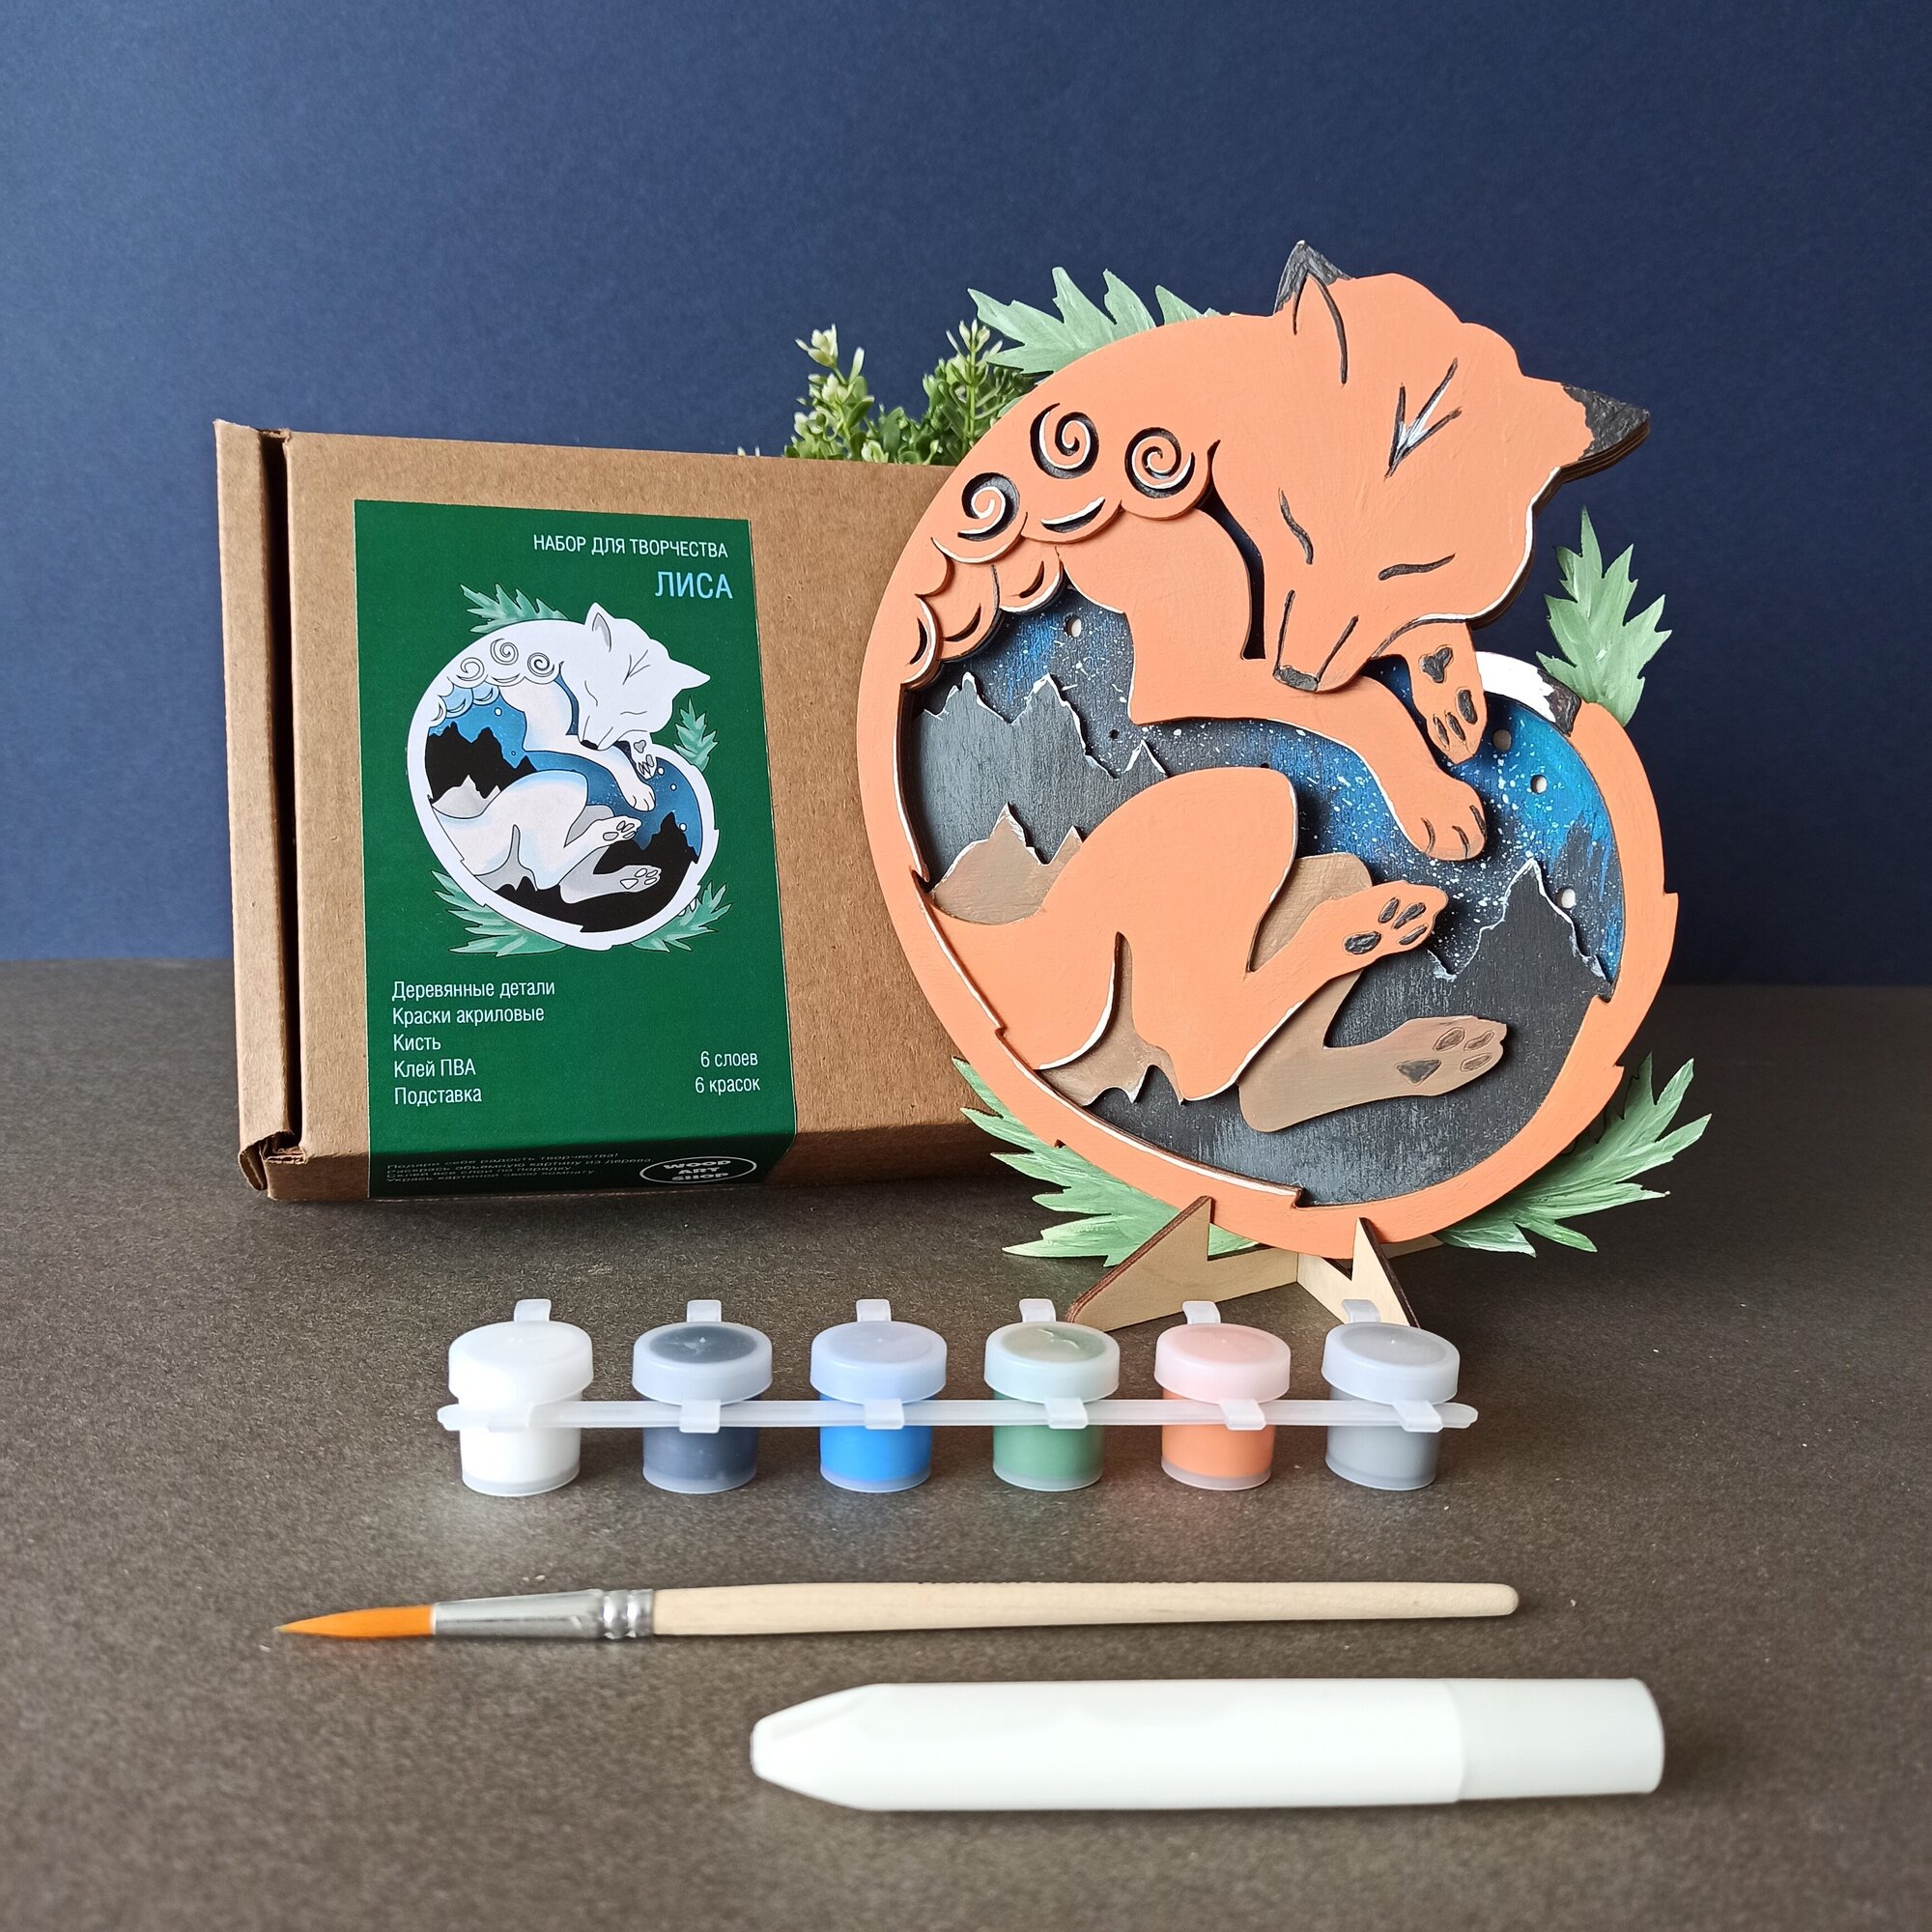 Набор для творчества детский из дерева сборный "Лиса" 3D раскраска для мальчиков и девочек, объемная раскраска для развития фантазии и моторики